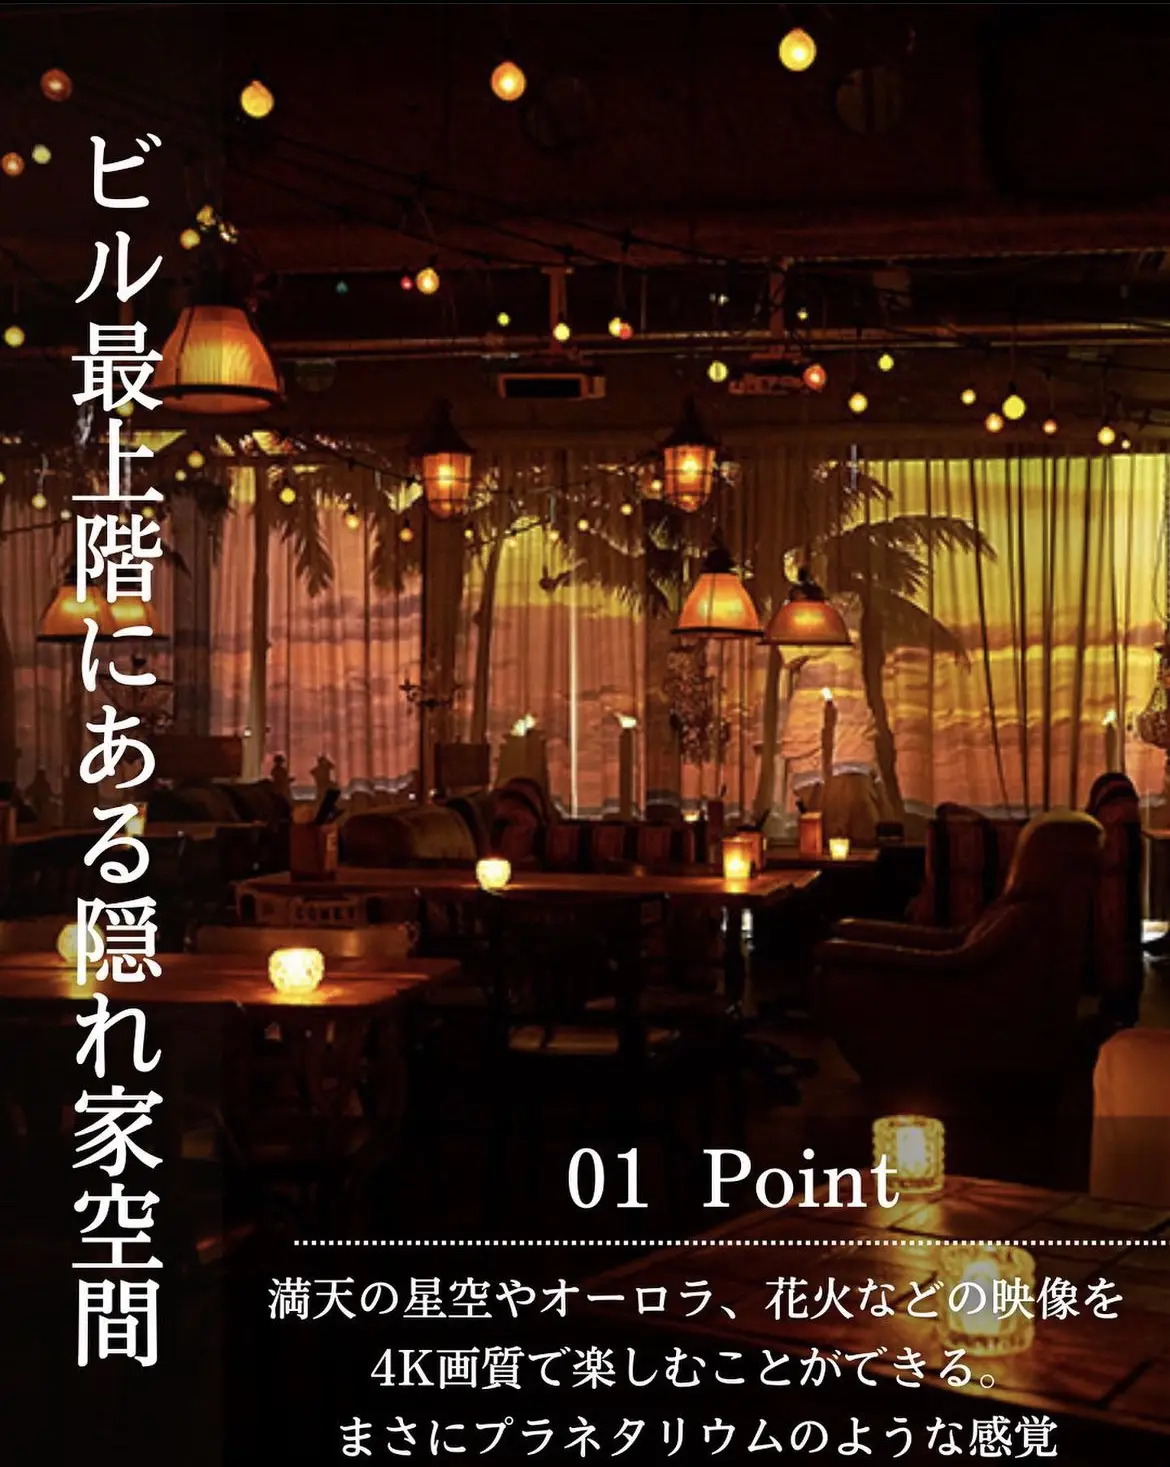 異空間レストラン 東京 - Lemon8検索